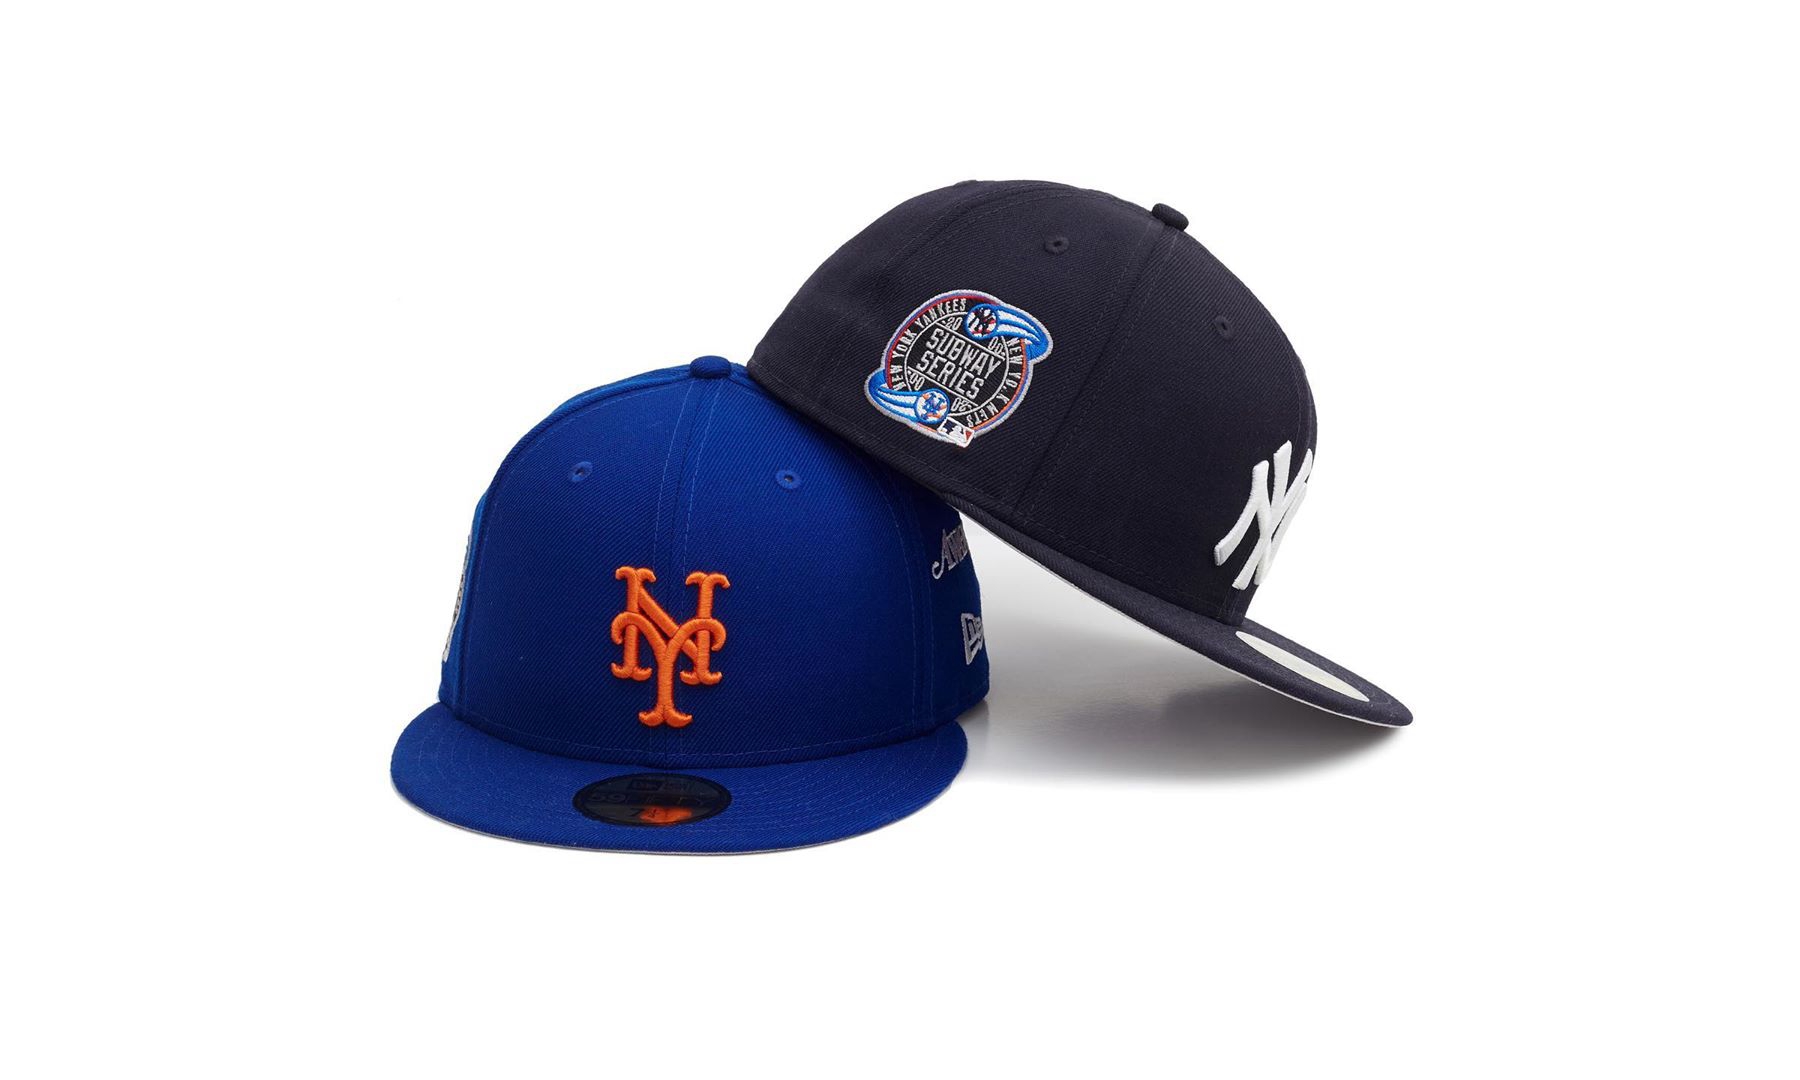 Awake NY x New Era x NY Yankees x NY Mets 合作系列公开